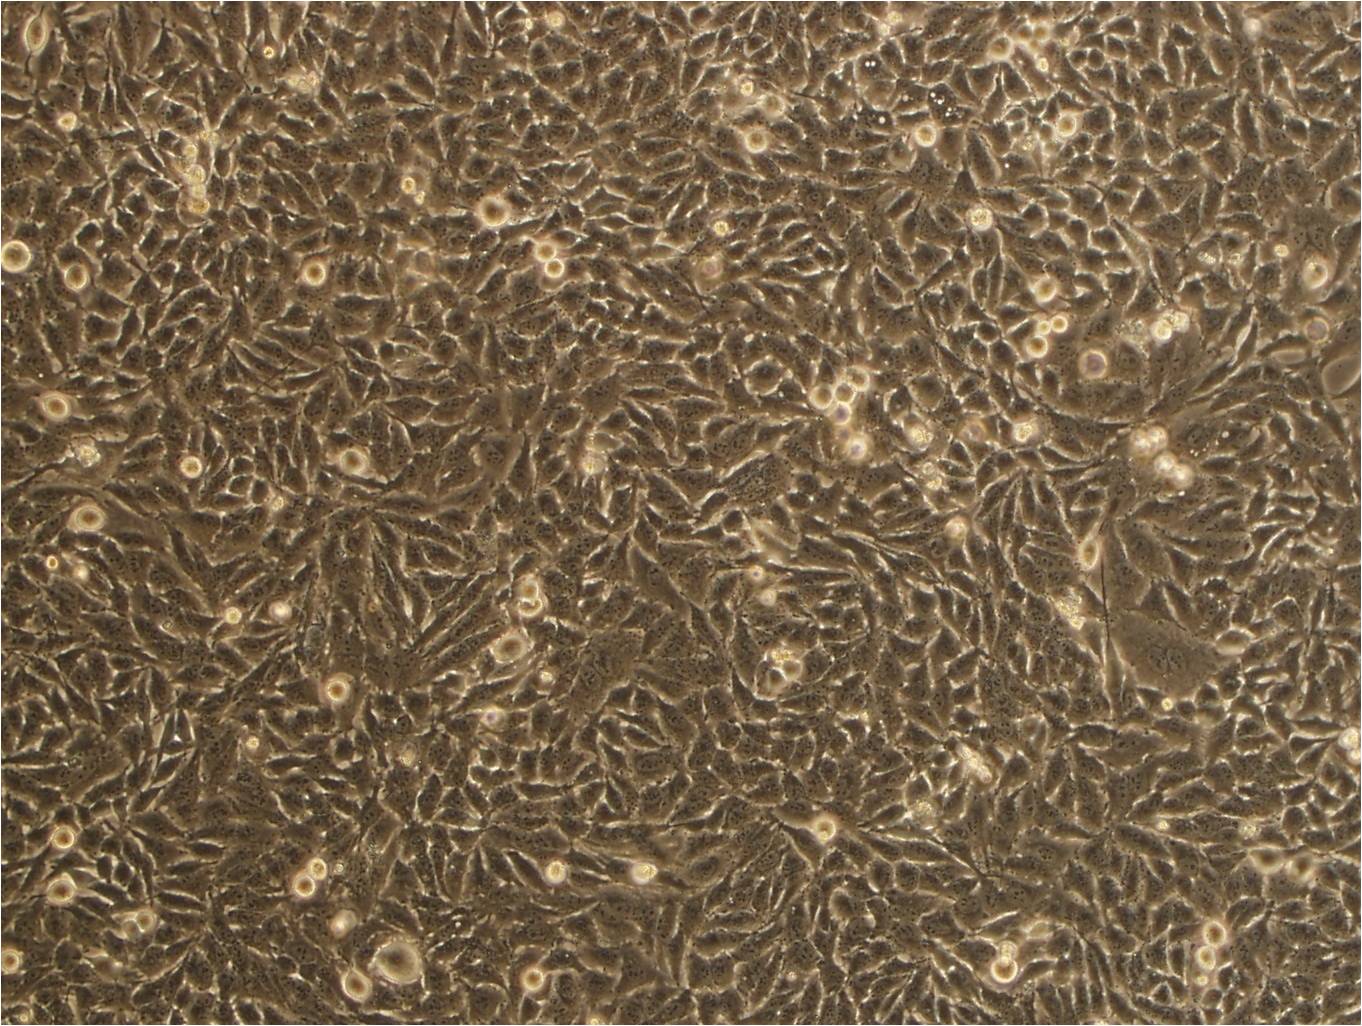 WSU-HN13人口腔鳞状细胞癌复苏细胞(附STR鉴定报告)